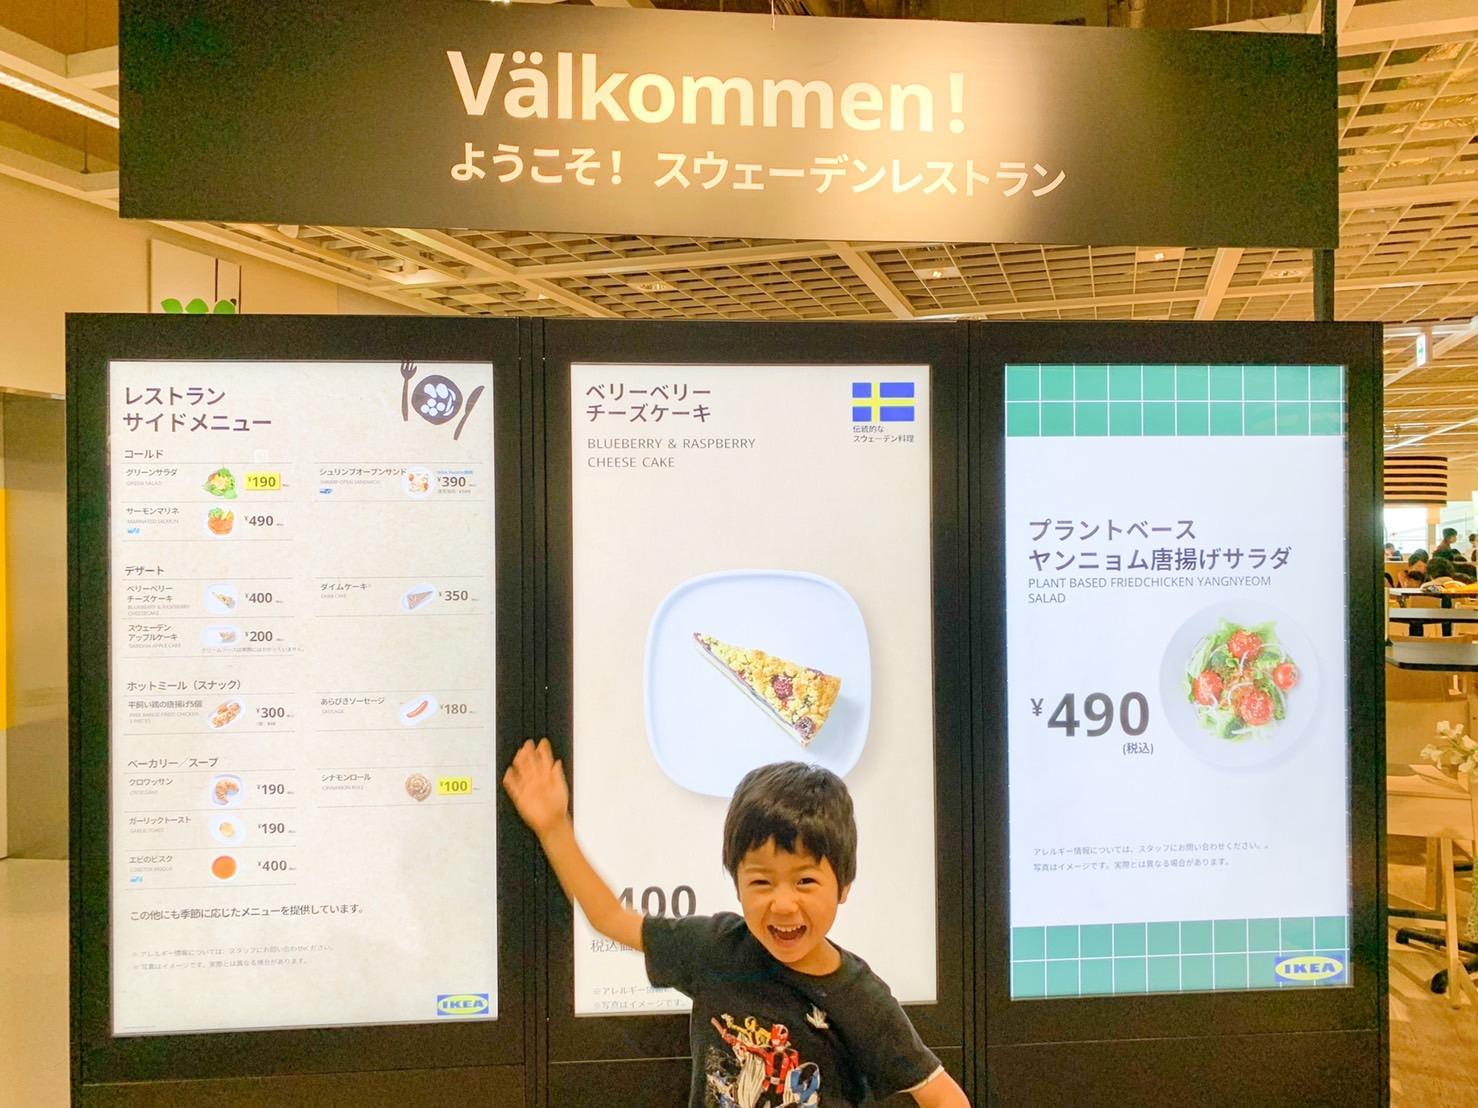 ６歳長男とデート Ikeaレストランのモーニングが楽しい 22 08 24 横浜市全域のぐるっとも横浜 さよこ ぐるっとママ横浜アンバサダー 横浜市の子育て支援情報が満載 ぐるっとママ横浜